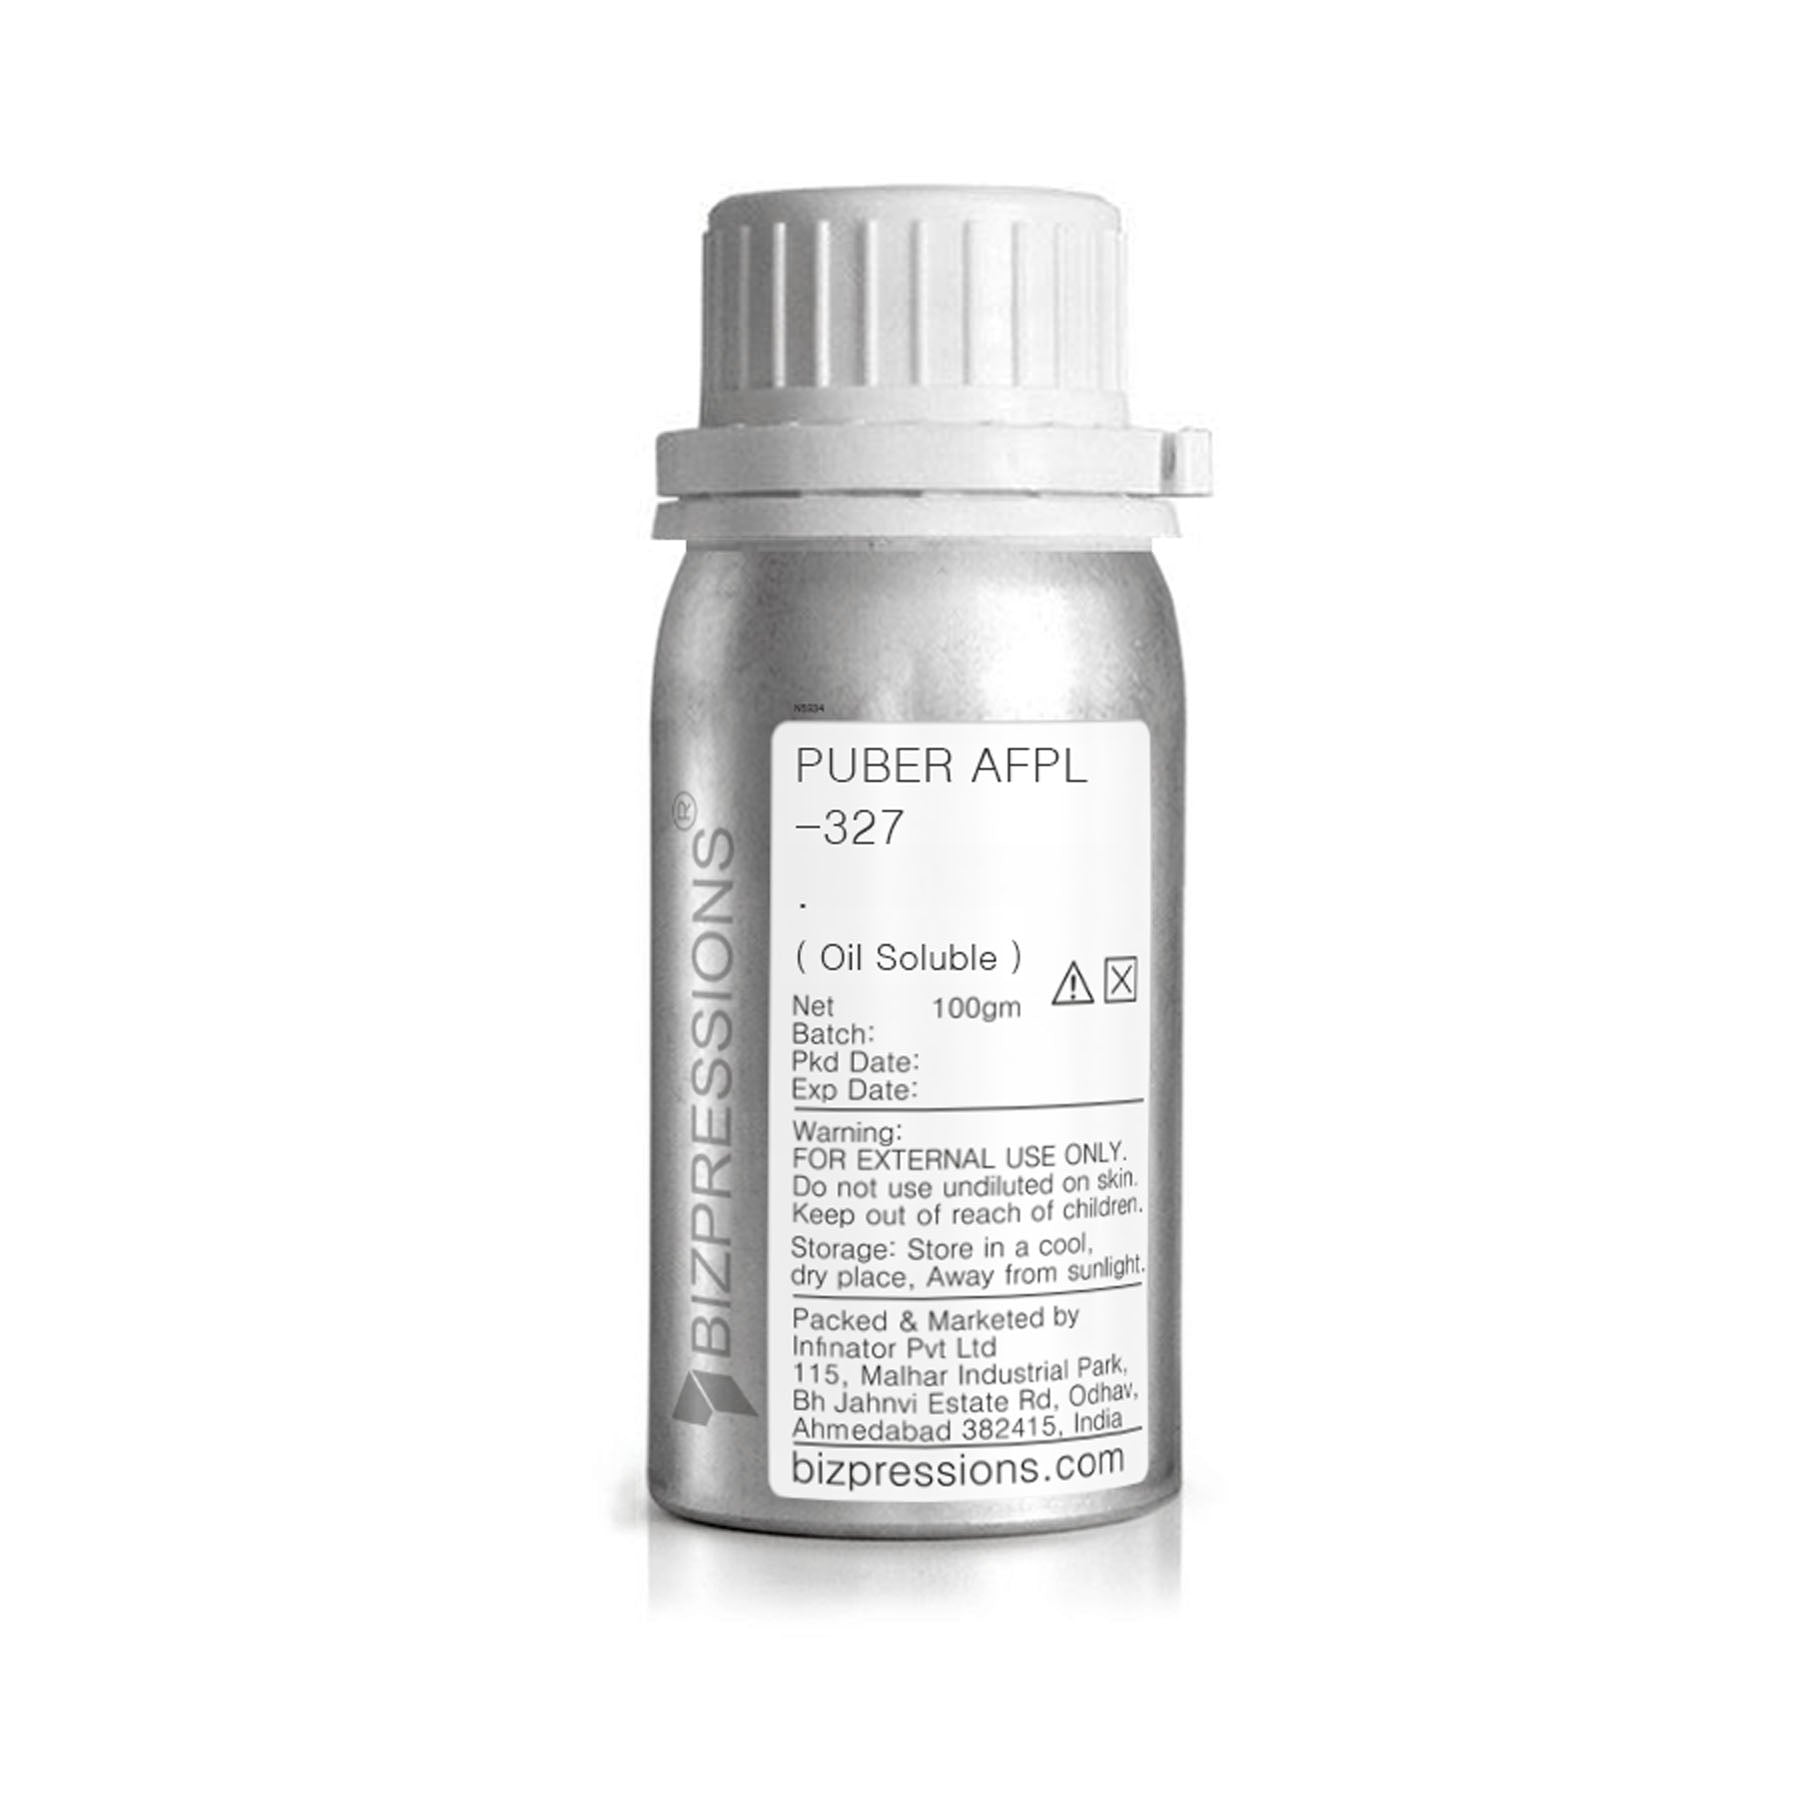 PUBER AFPL - 327 - Fragrance ( Oil Soluble ) - 100 gm